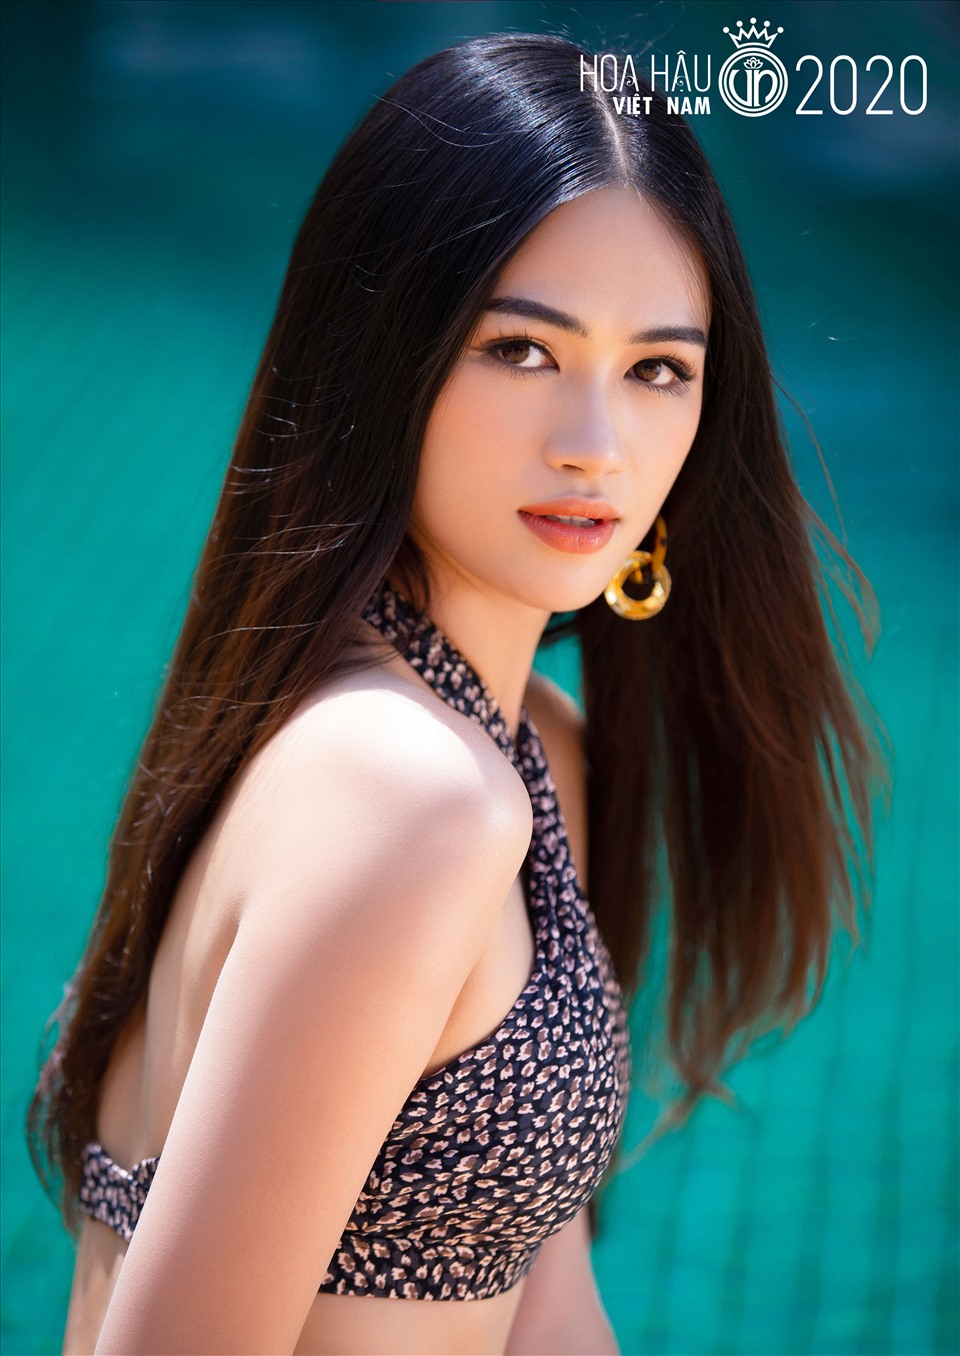 Tuy nhiên, cũng giống Ngọc Thảo, Thu Phương cũng là một gương mặt quen thuộc. Năm 2019, cô từng giành giải thưởng “Người đẹp biển” và lọt top 5 Miss World Vietnam.